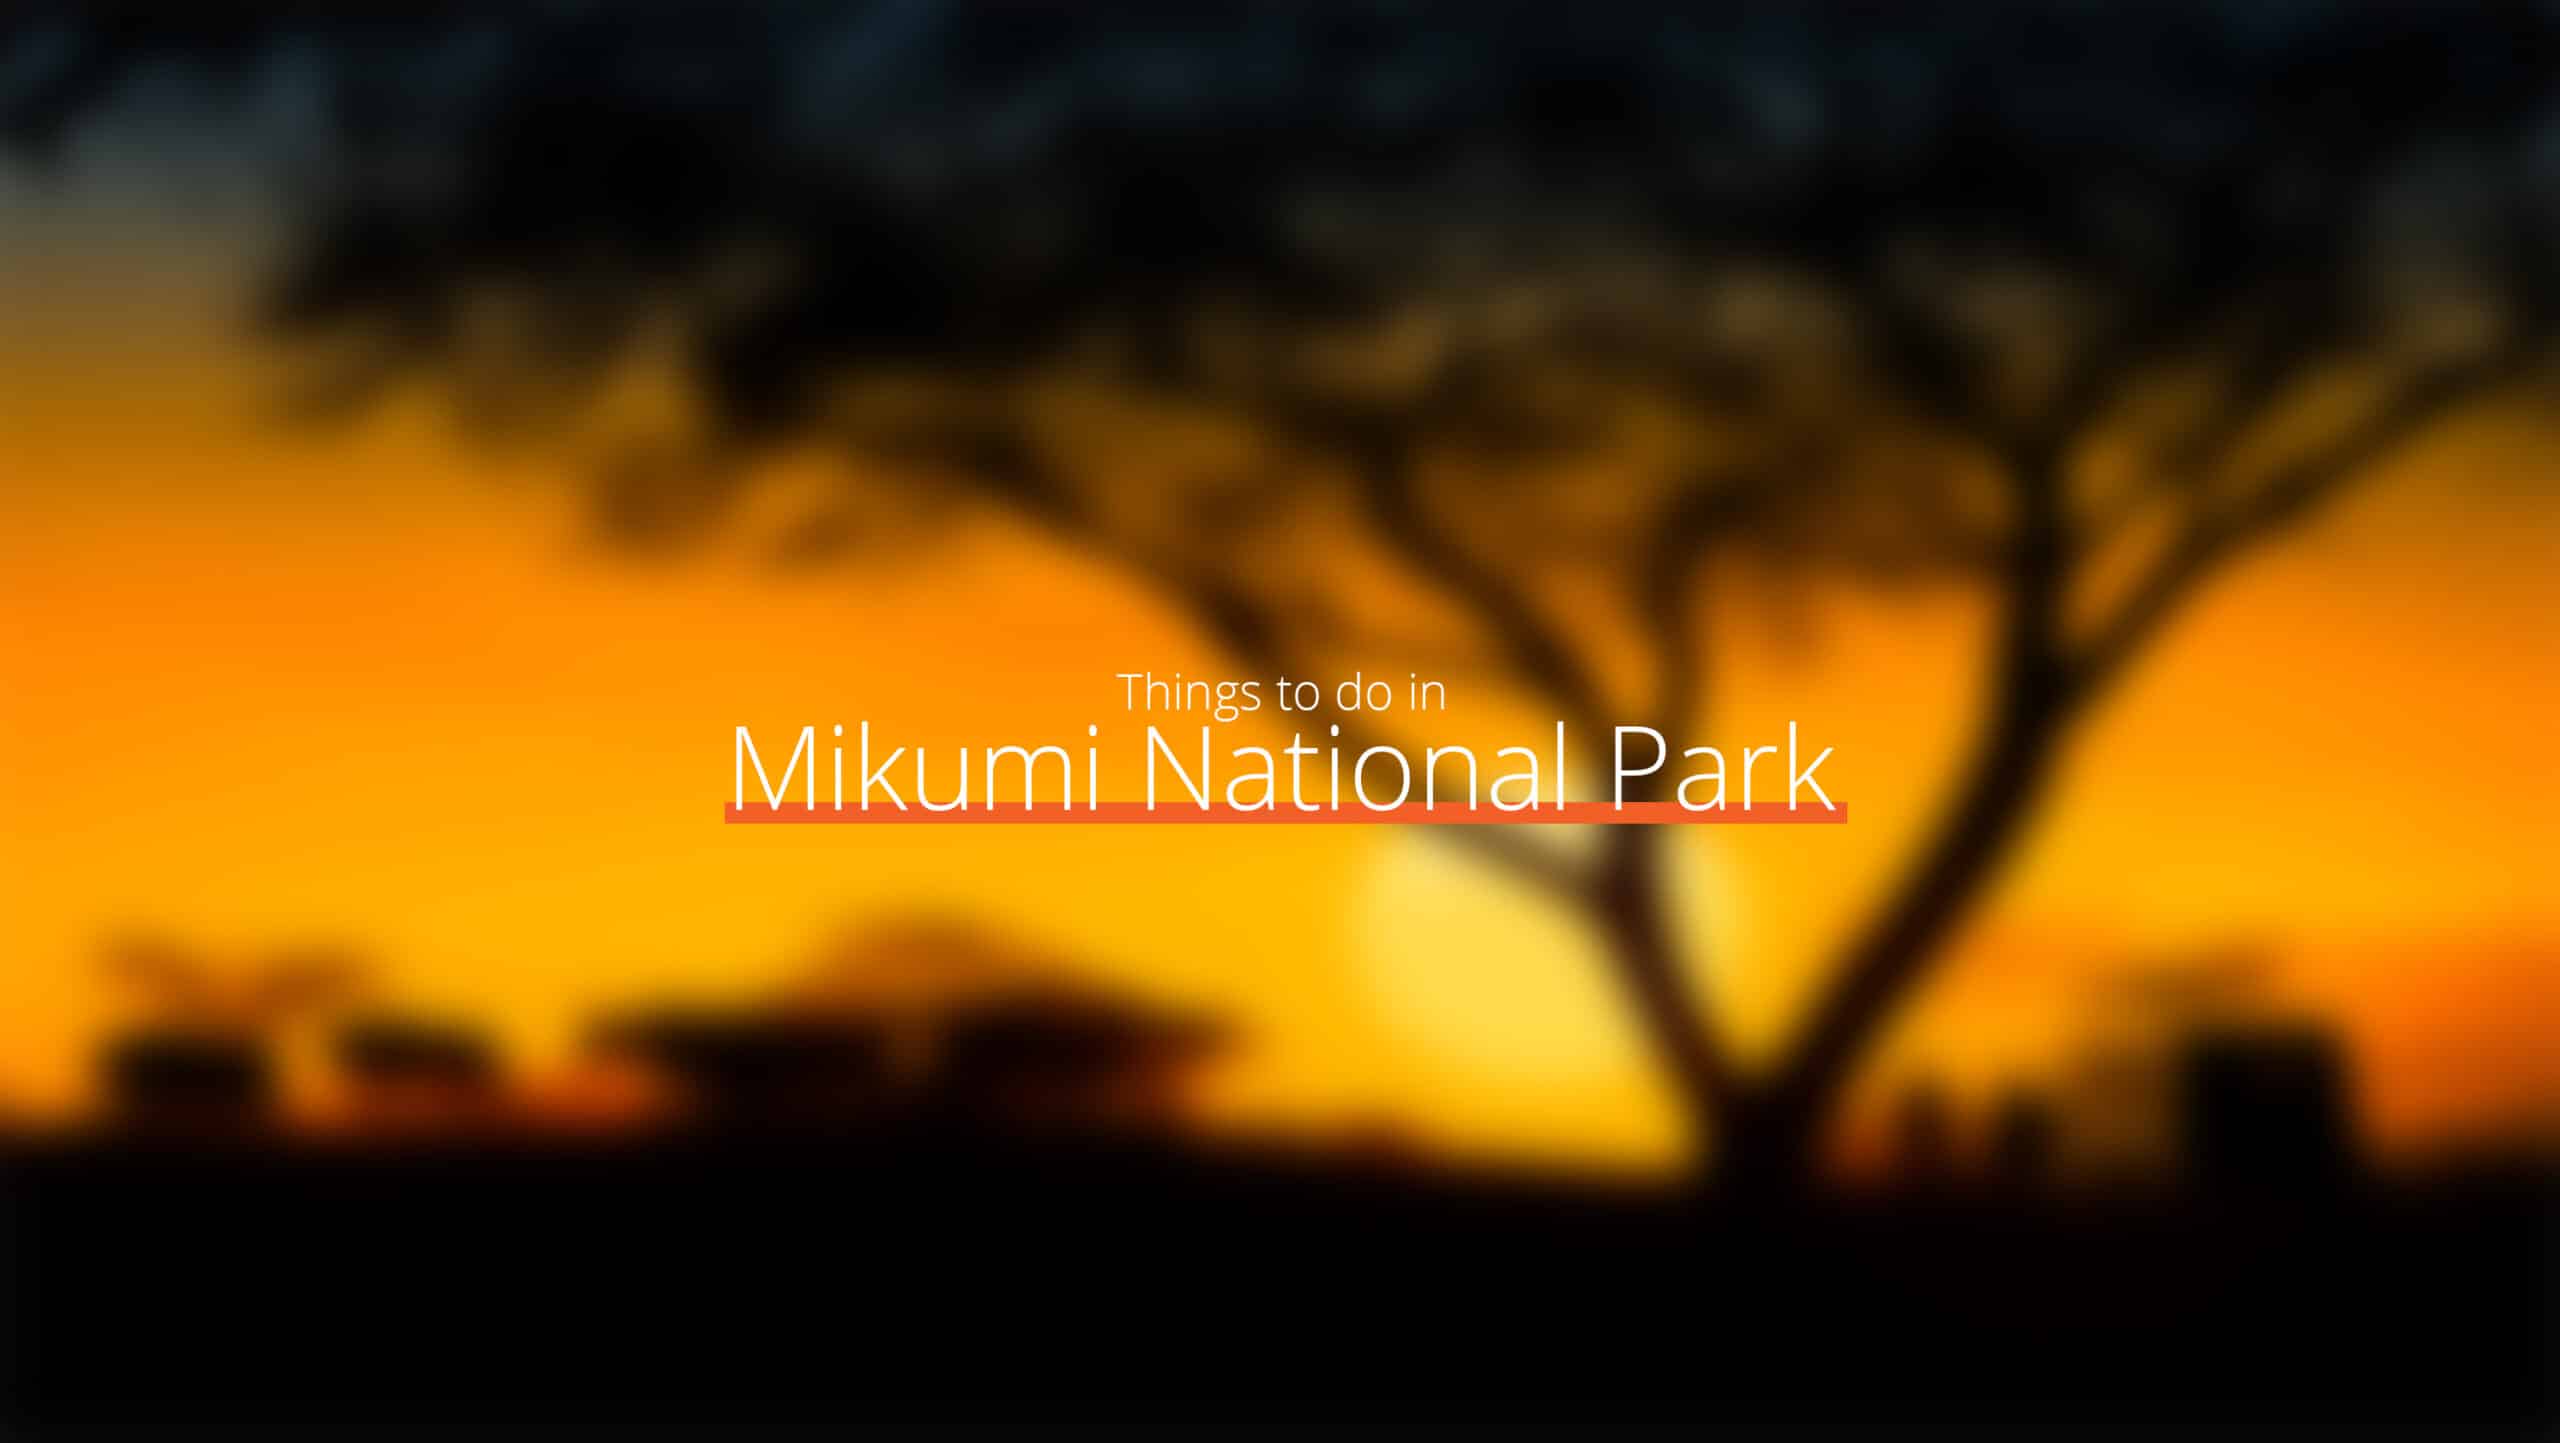 坦桑尼亚 - mikumi 国家公园 1 级 - 健康